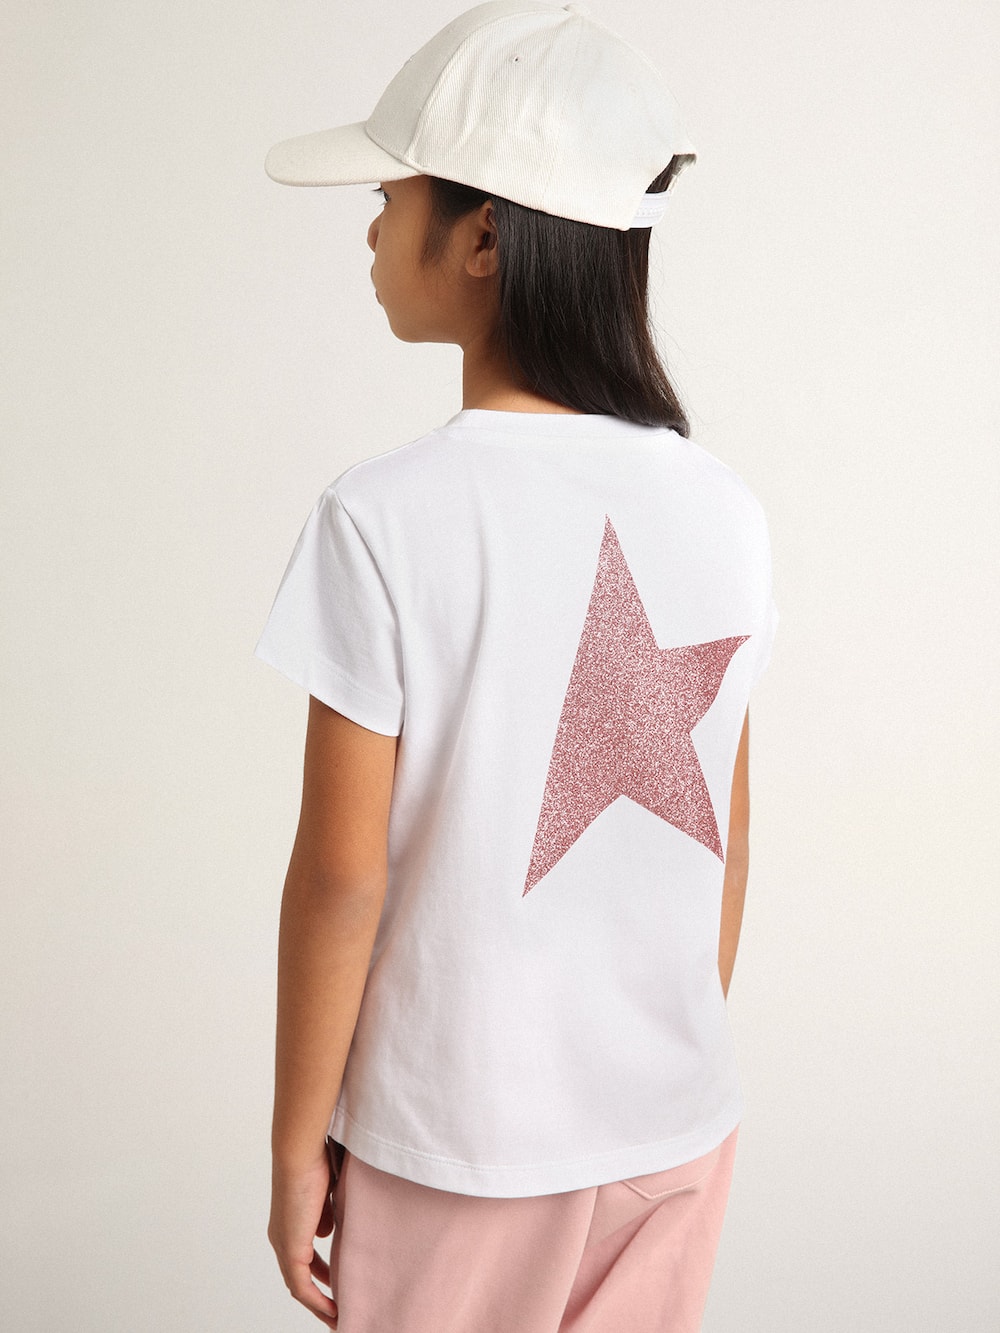 Golden Goose - T-shirt bianca da bambina con logo e maxi stella in glitter rosa in 